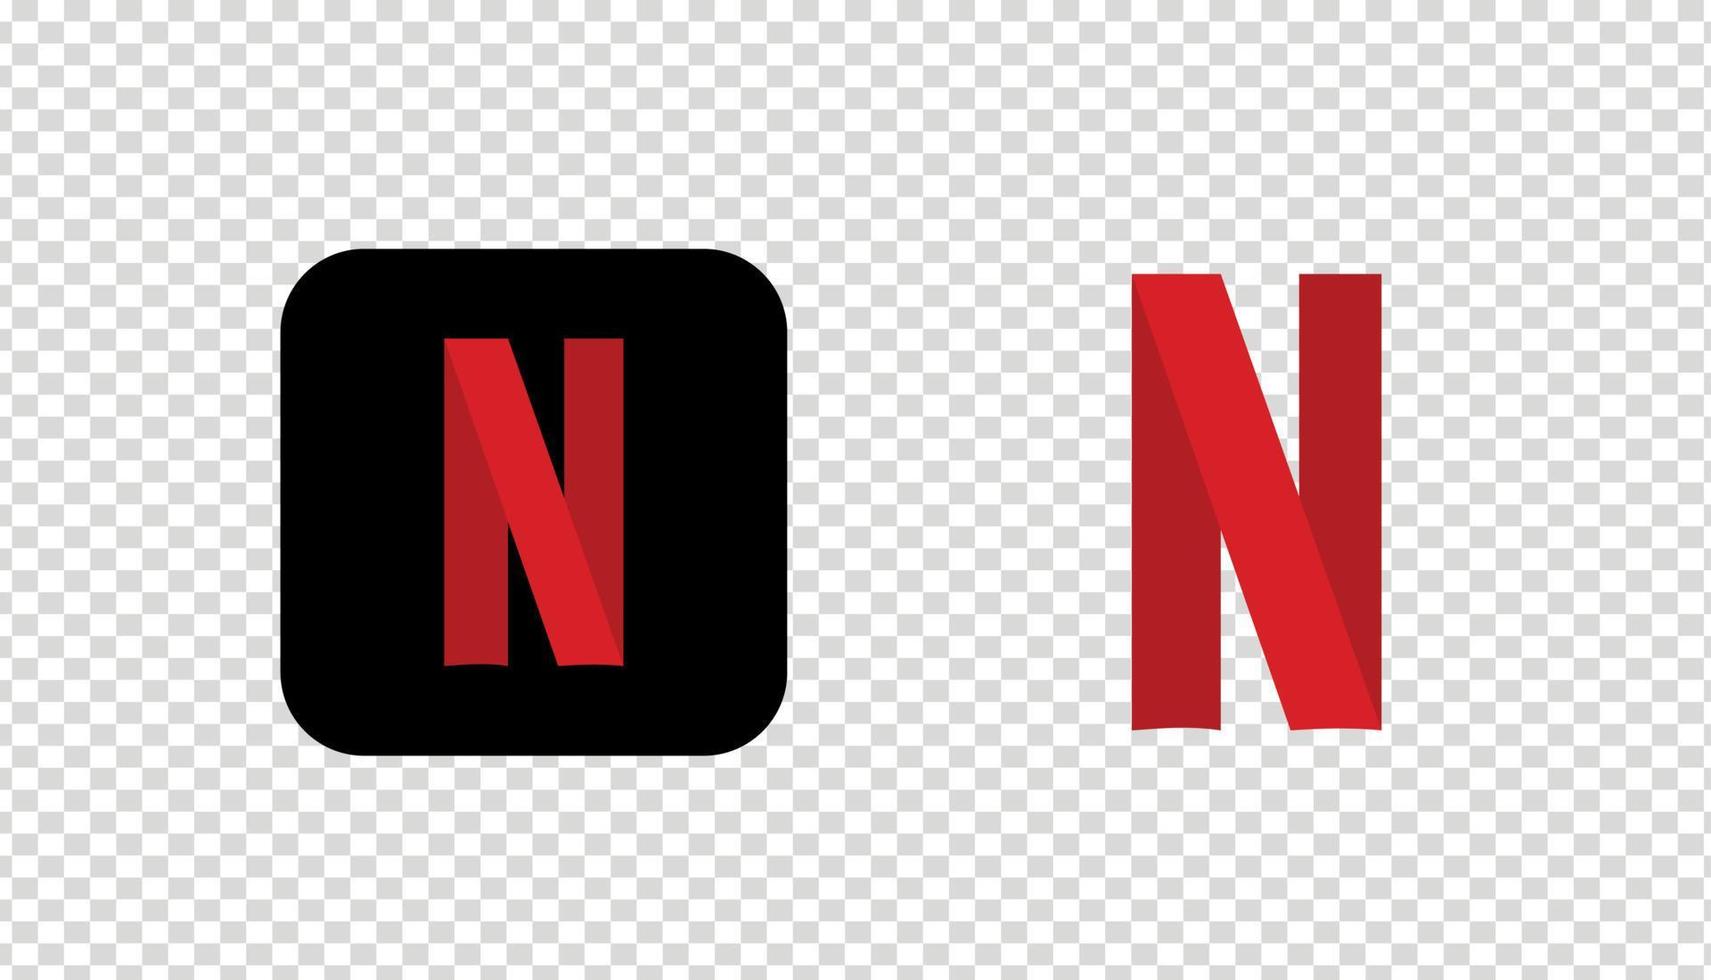 Biểu tượng Netflix độ phân giải vector trên nền trong suốt: Bạn cần một biểu tượng chất lượng cao để phục vụ cho dự án của mình? Hãy xem hình ảnh về biểu tượng Netflix độ phân giải vector trên nền trong suốt, bạn sẽ được sở hữu một biểu tượng đẹp và được thiết kế chuyên nghiệp để sử dụng cho bất kỳ dự án nào của bạn.